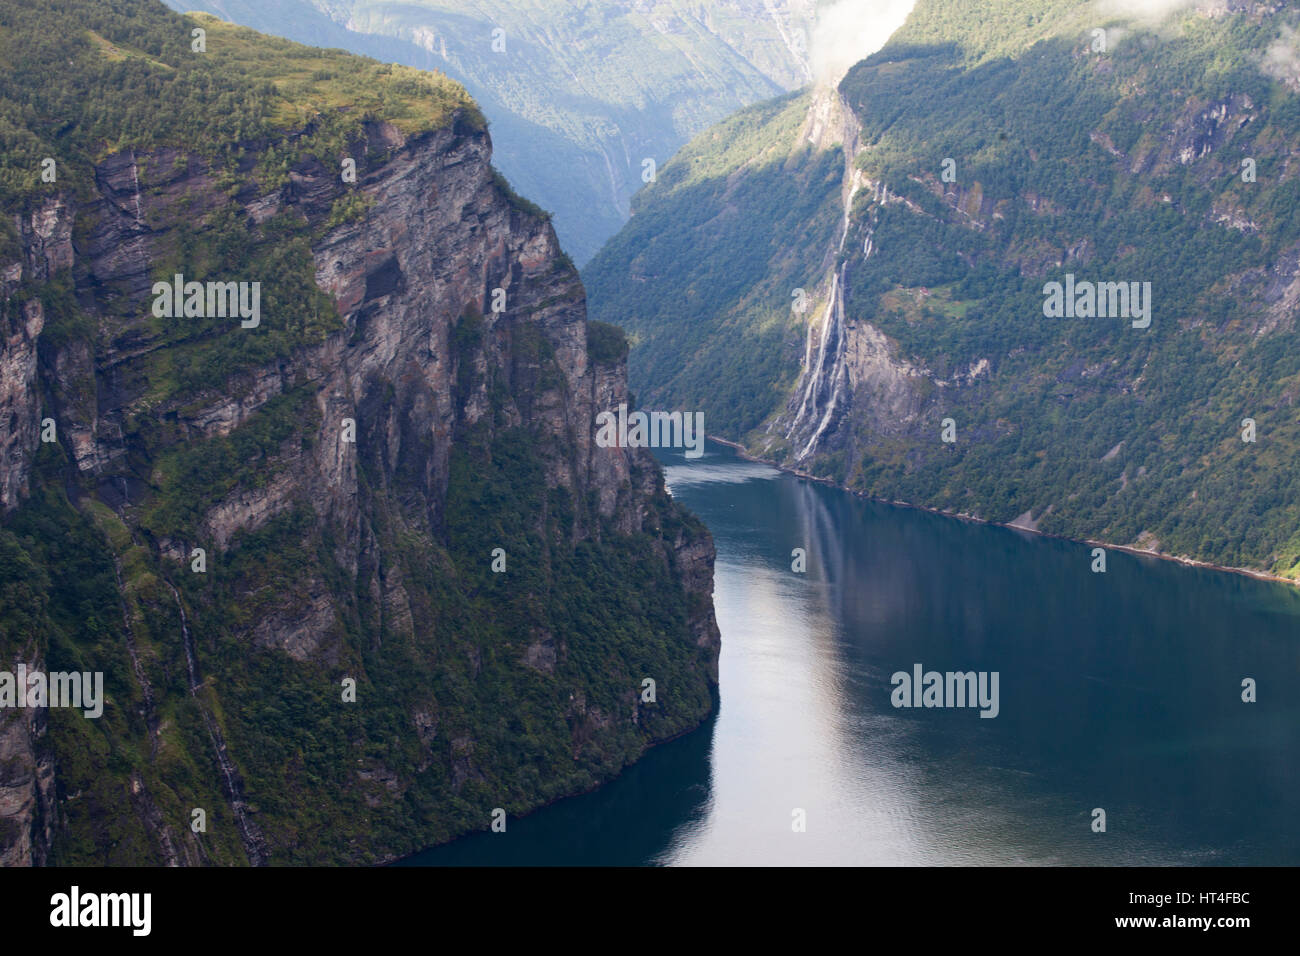 Le spettacolari zone dei fiordi in Norvegia offre attività quali escursioni, ghiacciaio passeggiate, pesca e ciclismo. Foto Stock